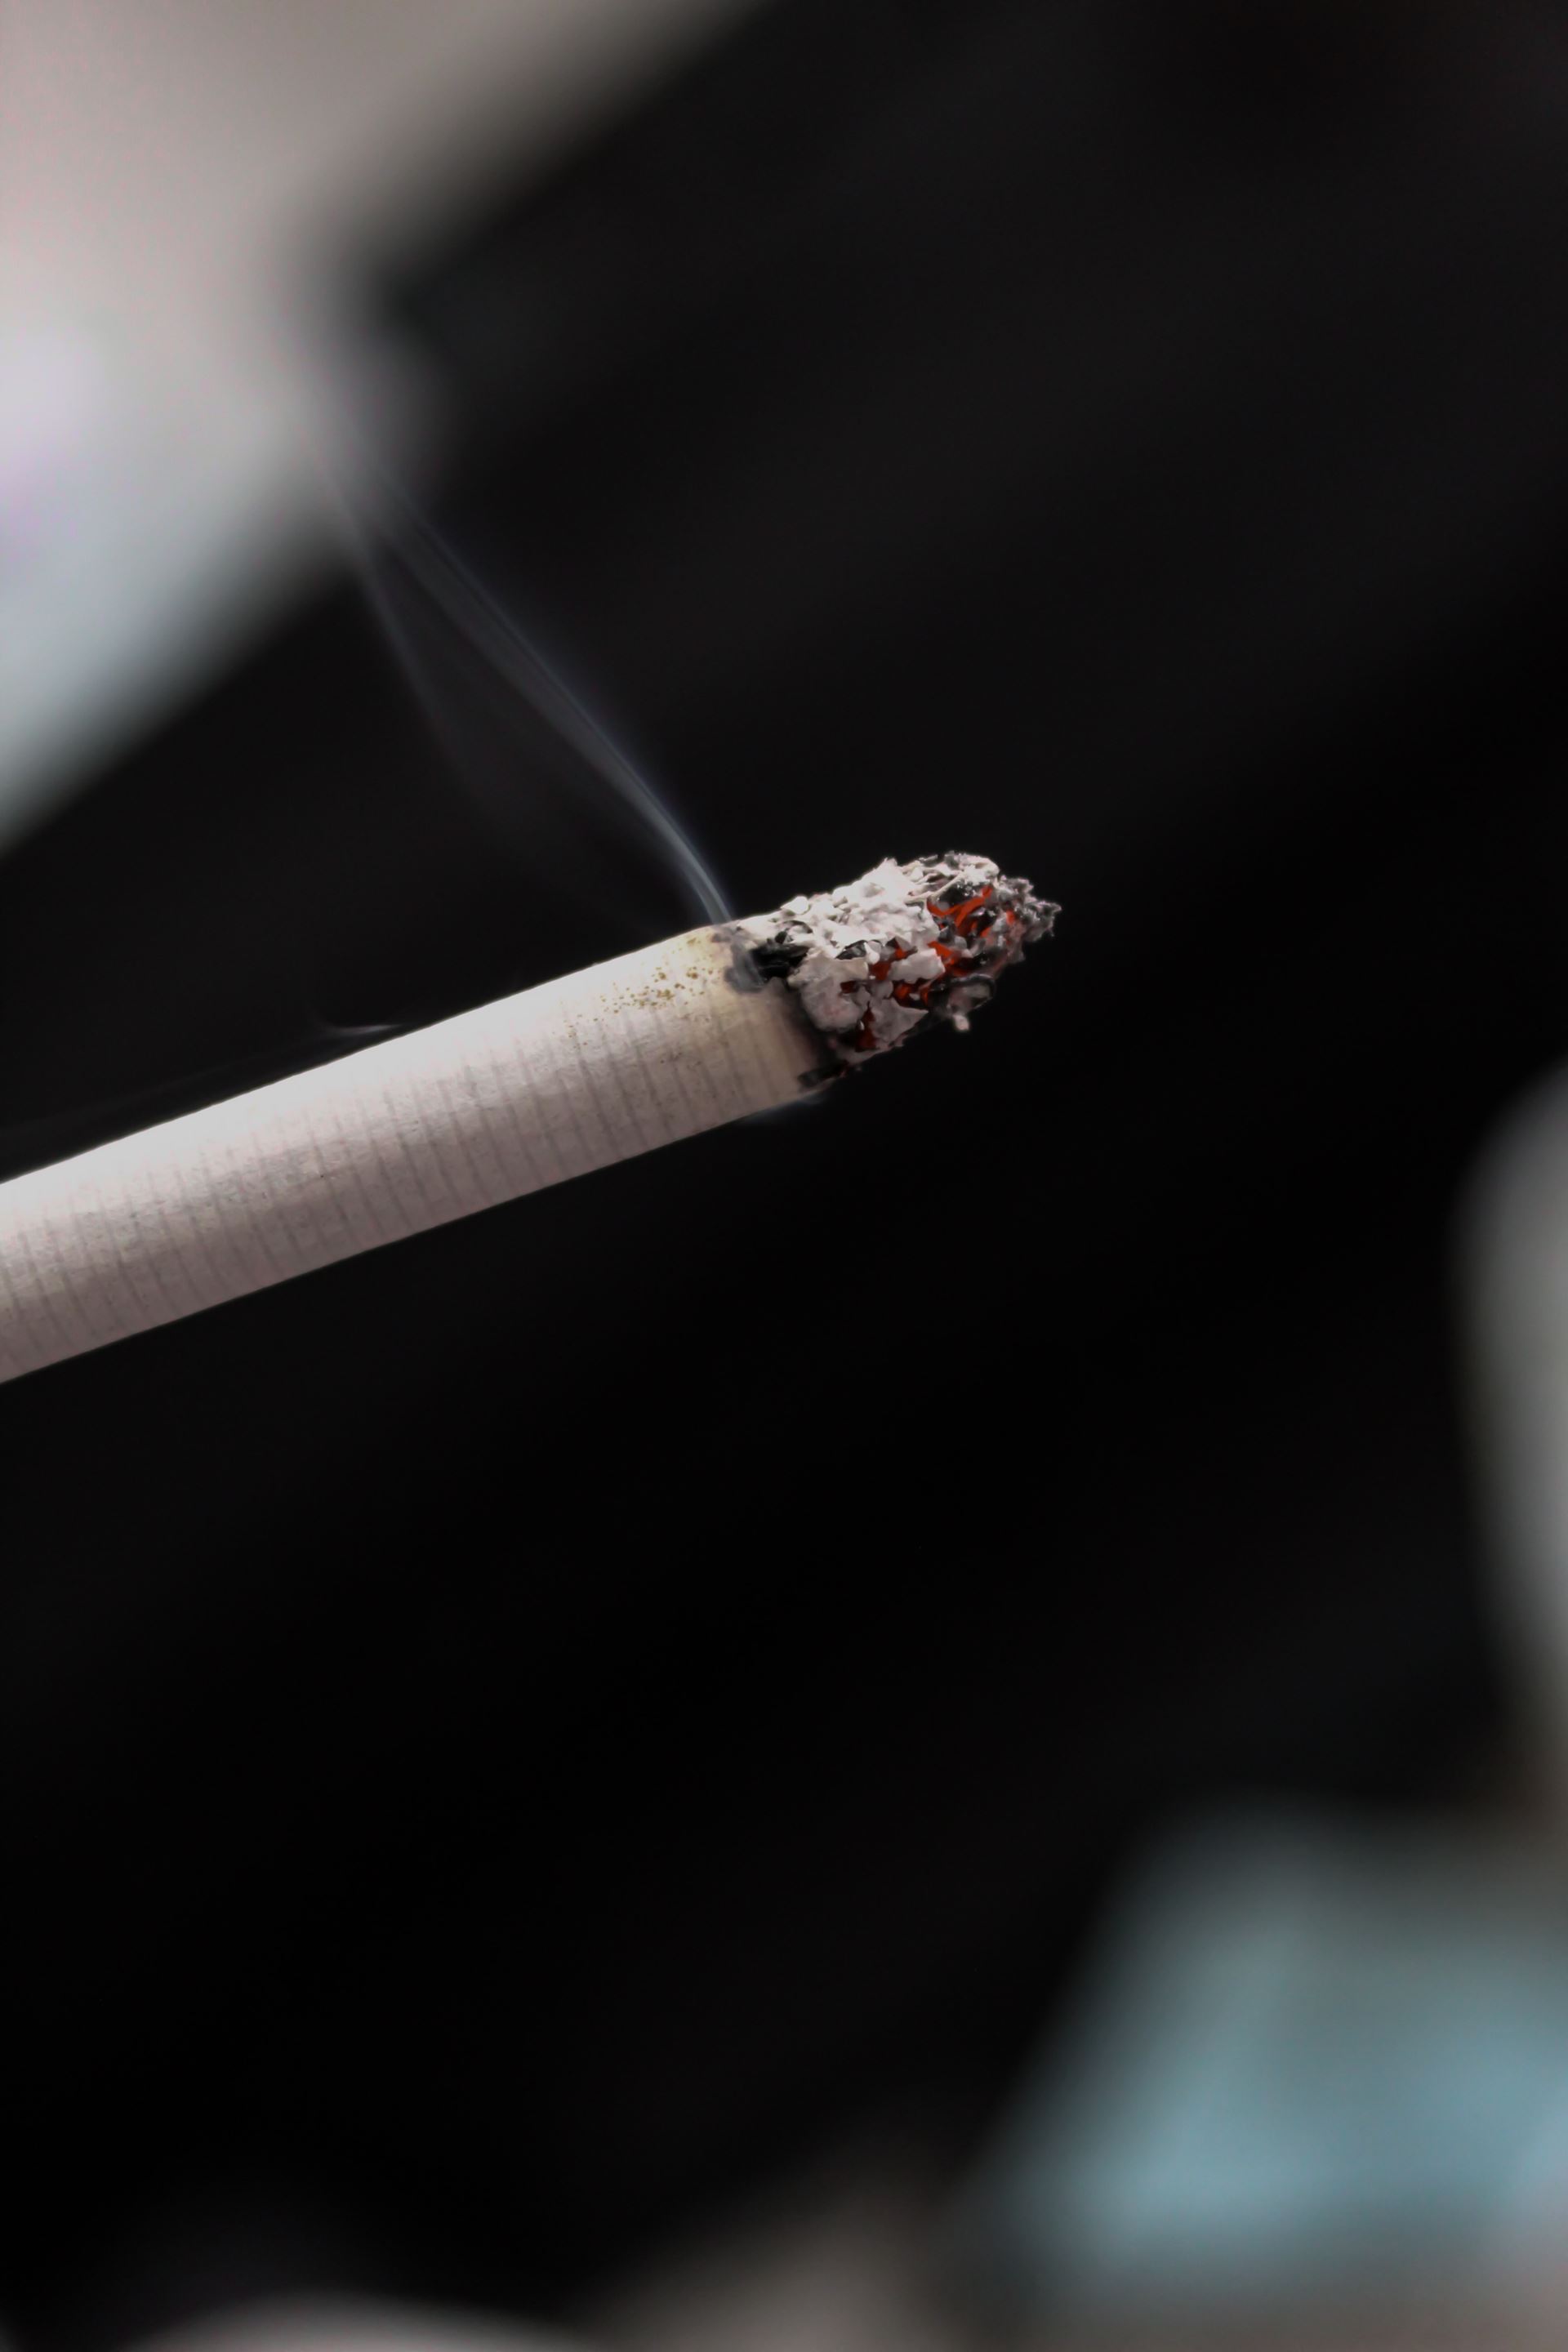 Photo of a cigarette